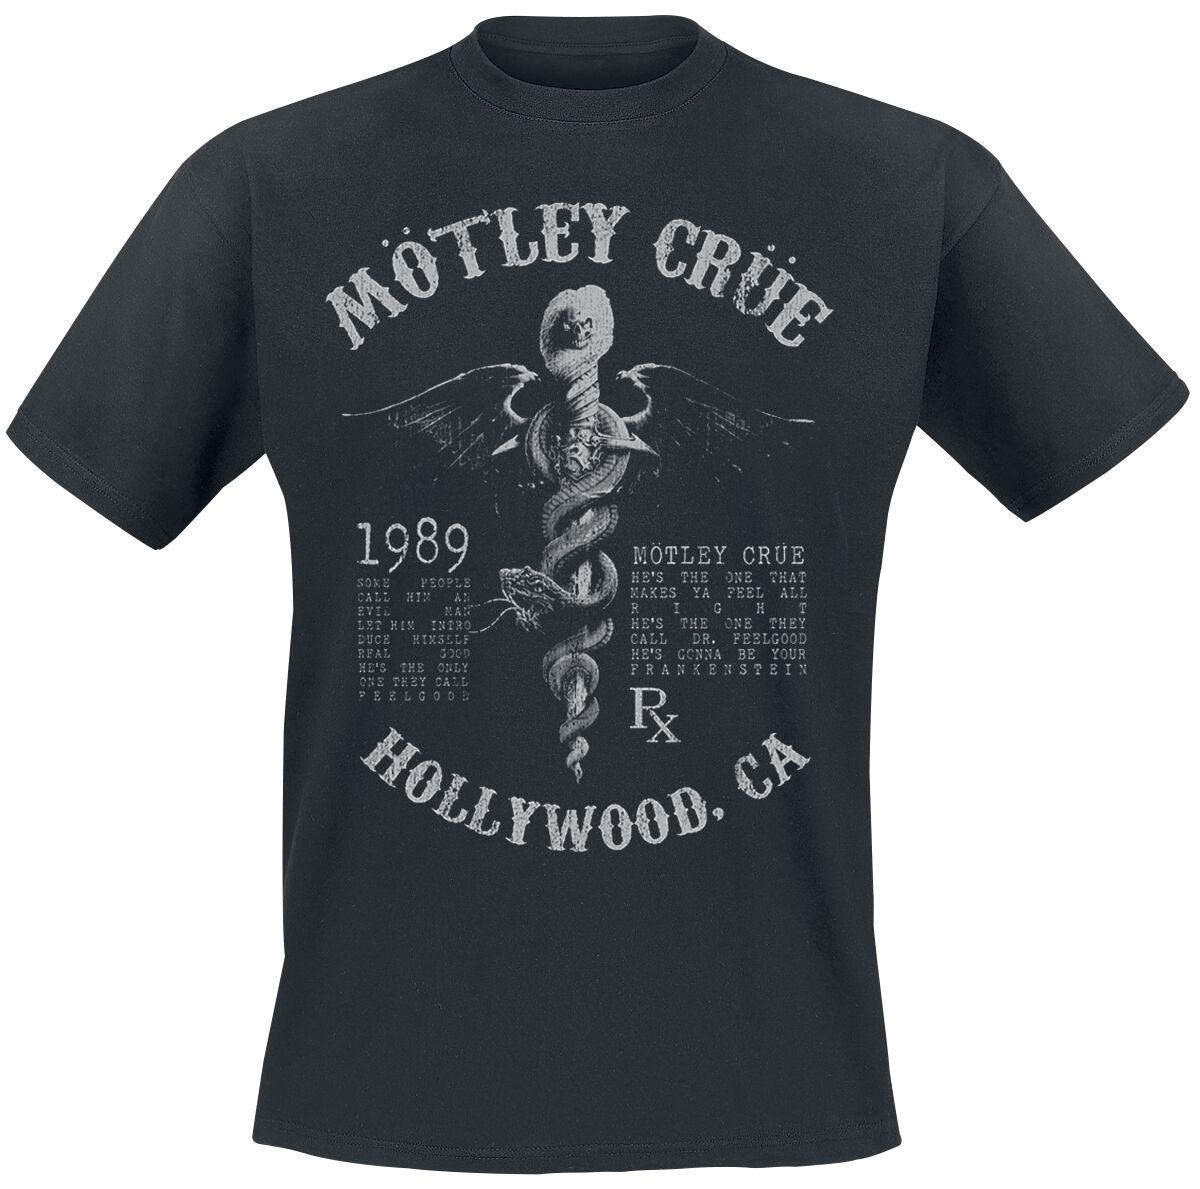 Mötley Crüe T-Shirt - Faded Feel Good Lyrics - S bis XXL - für Männer - Größe XL - schwarz  - Lizenziertes Merchandise!